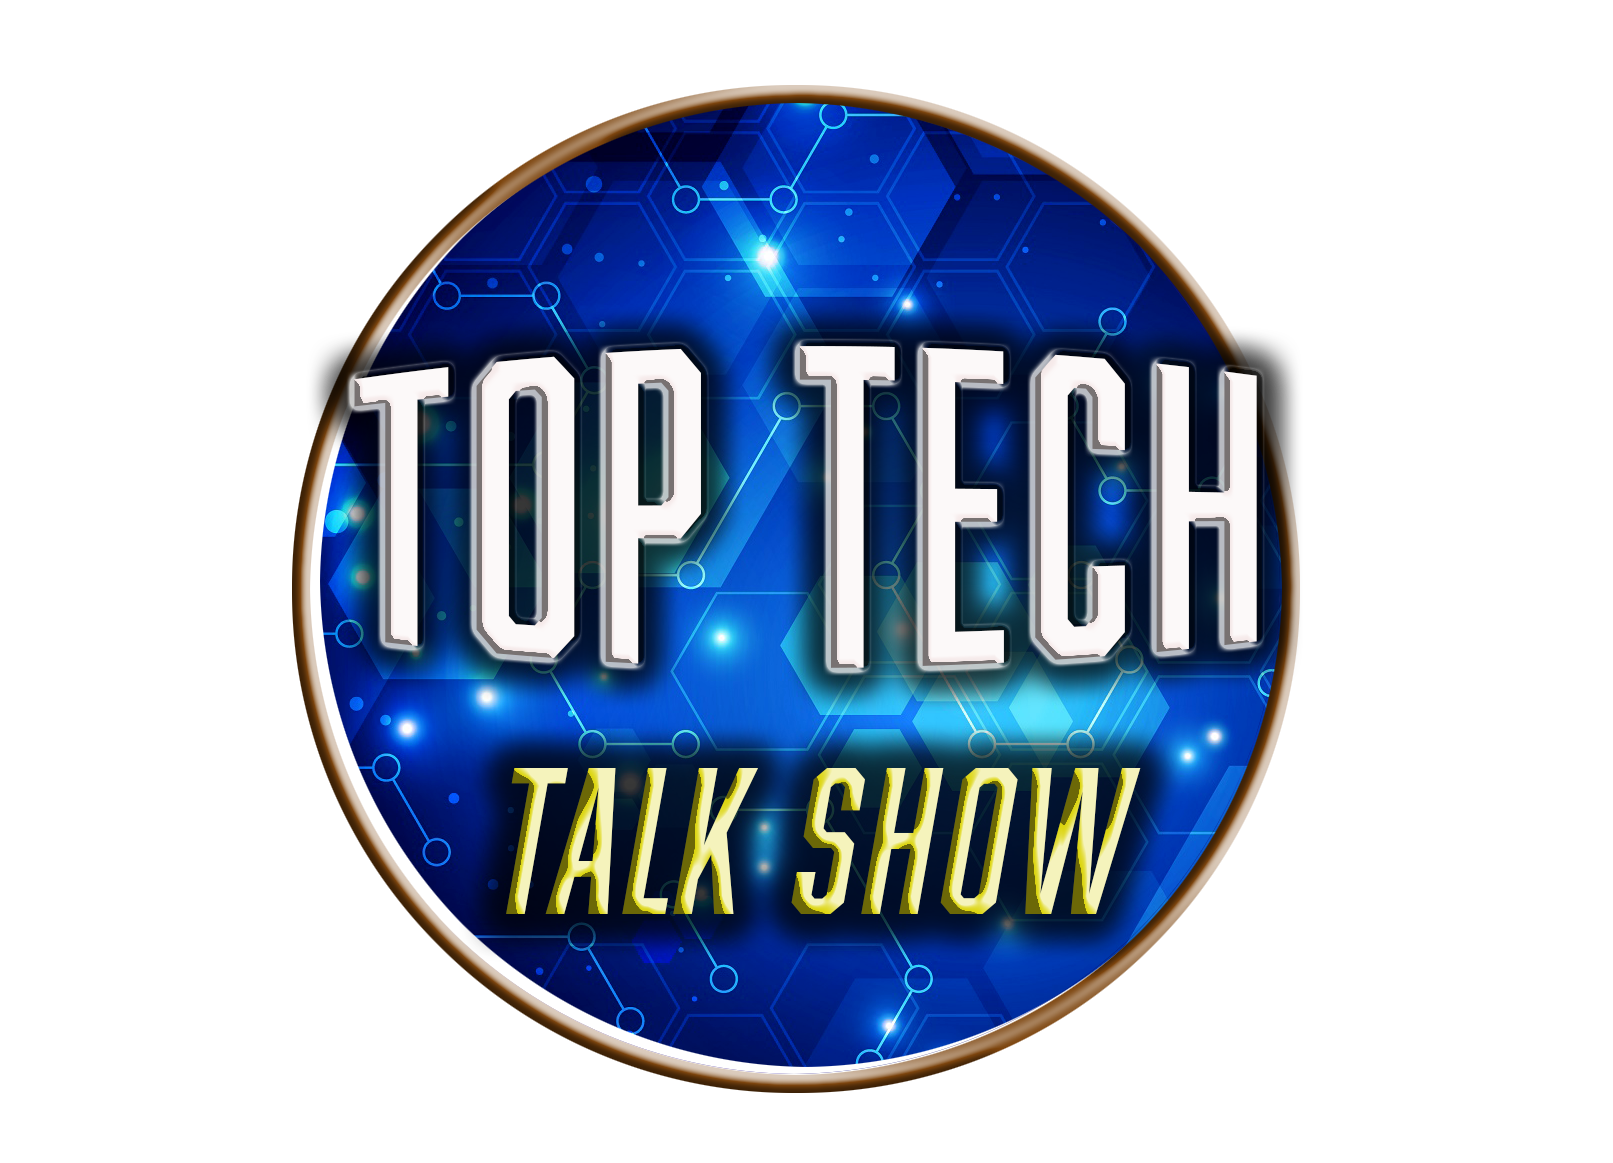 Top Tech Talk Show